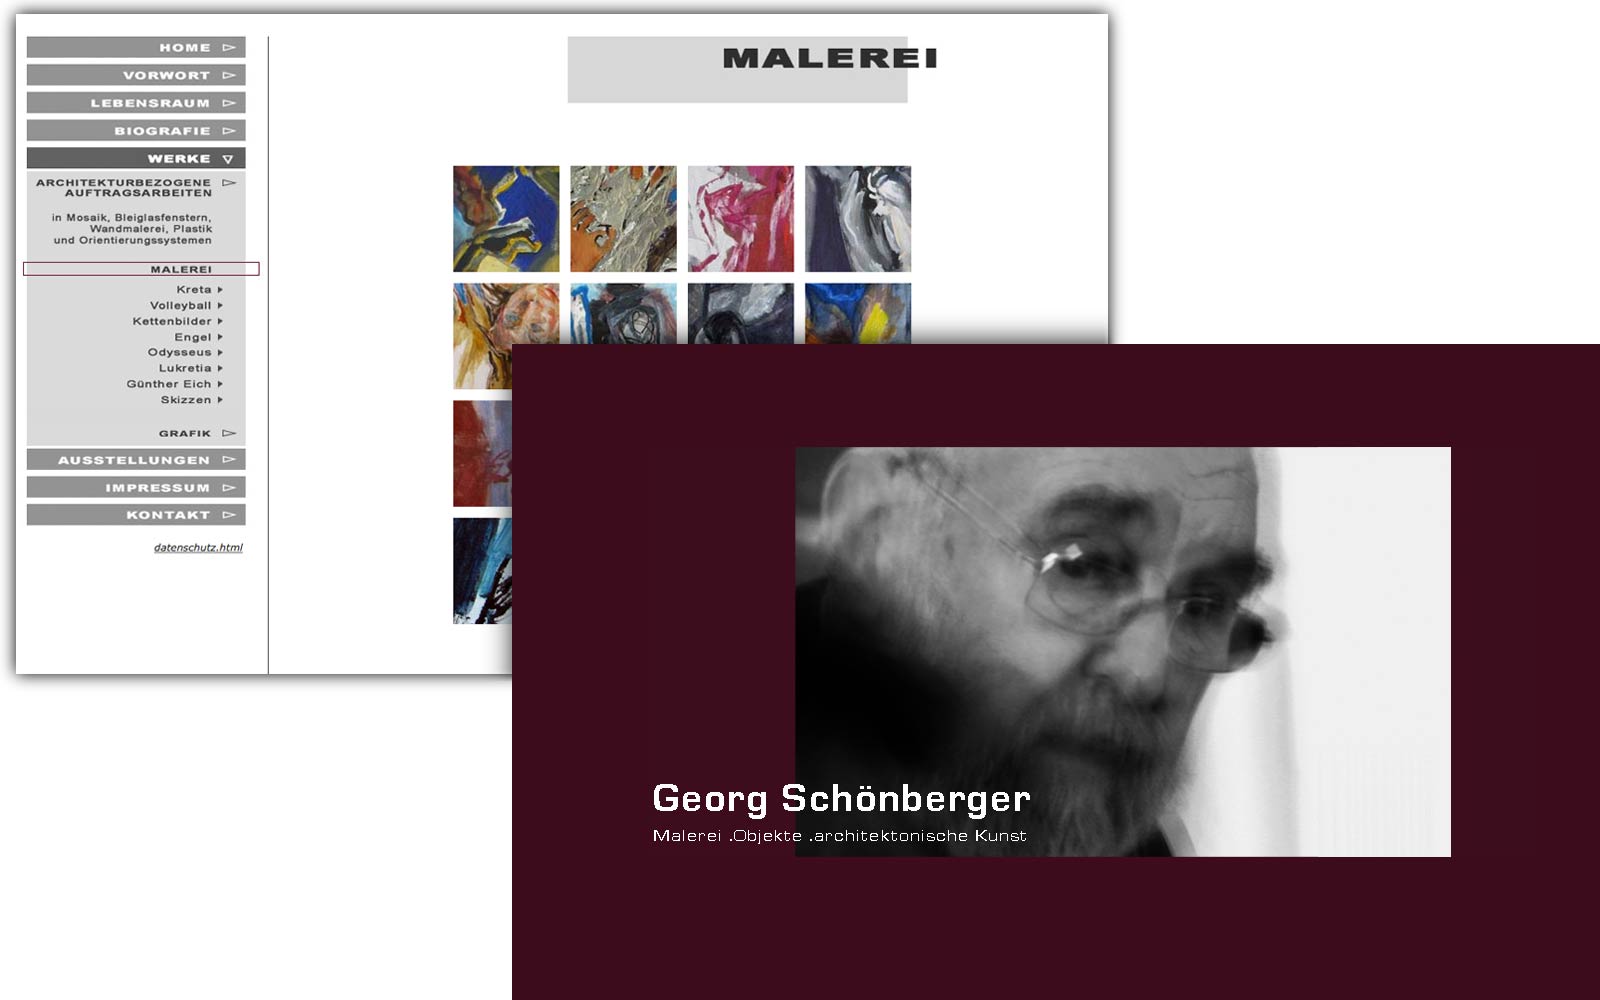 Georg Schöneberger, Künstler